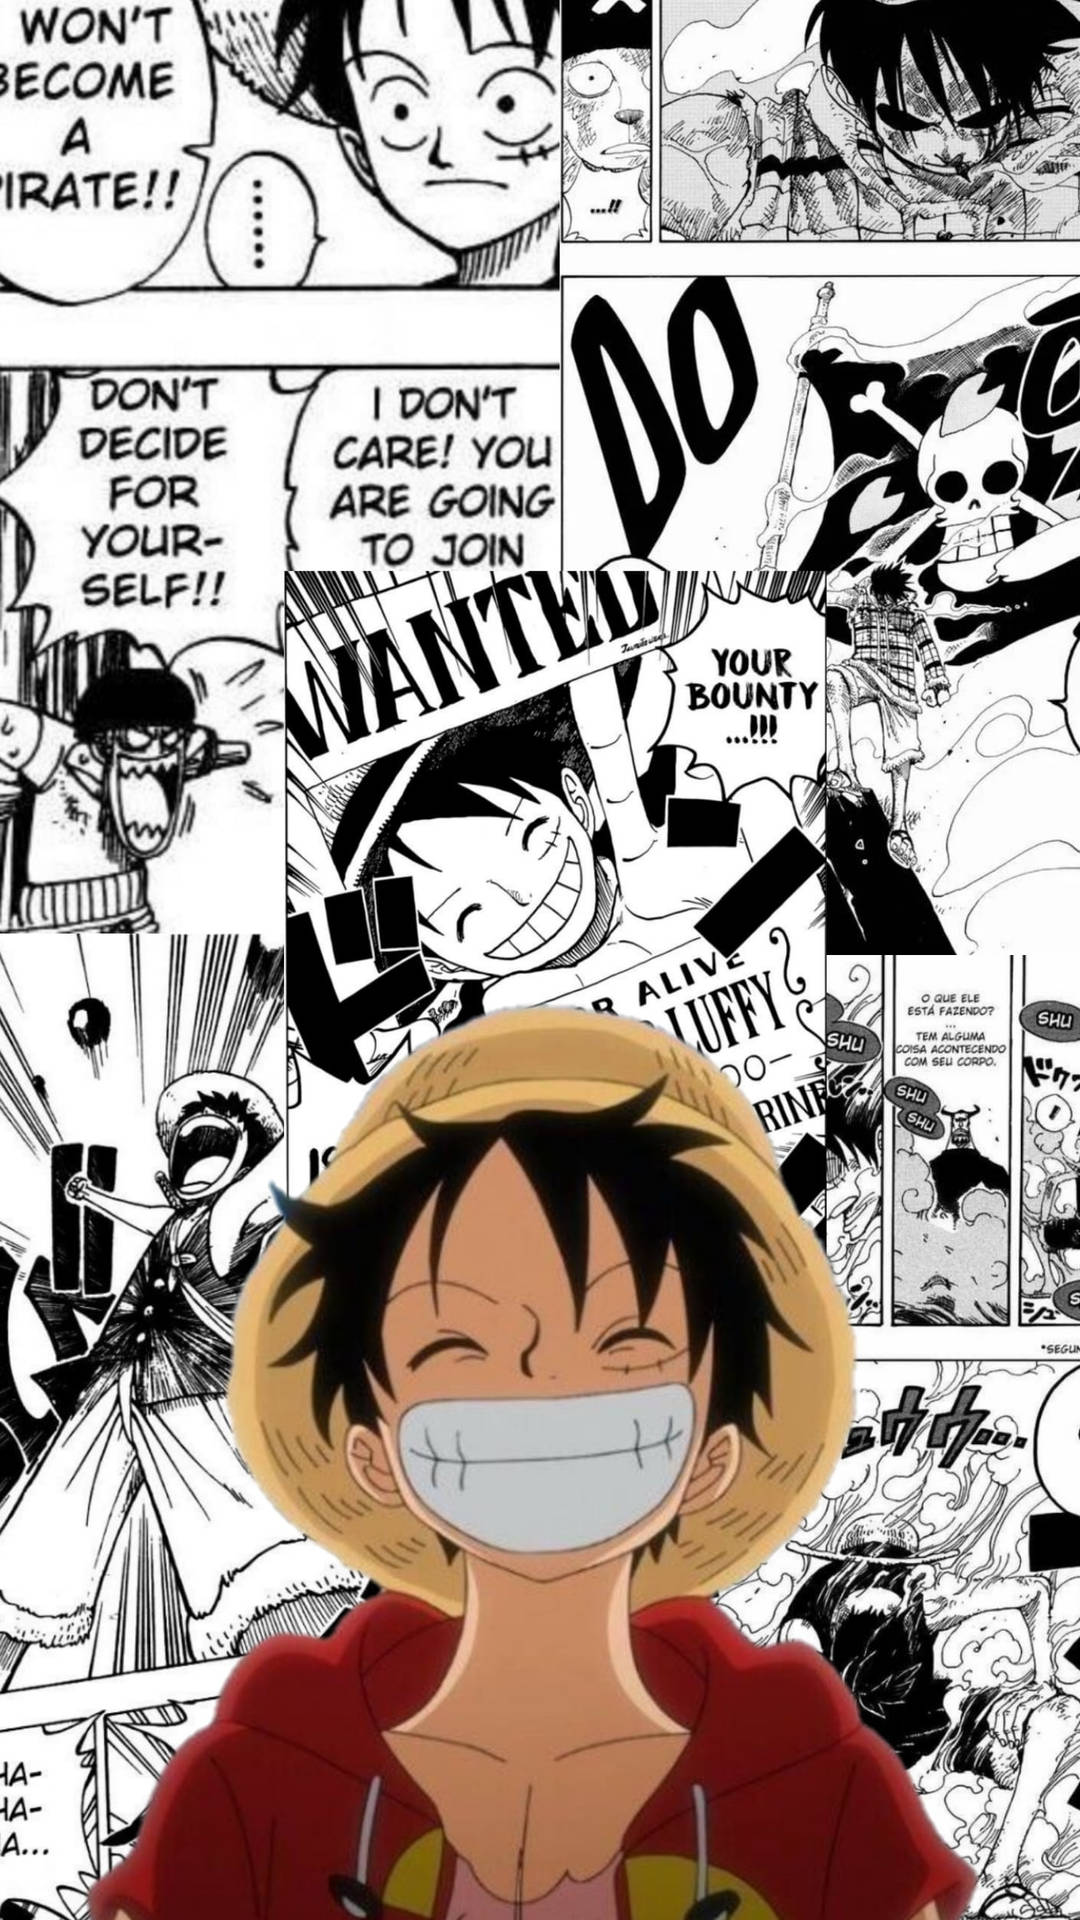 Manga Panel And Luffy Smile Background